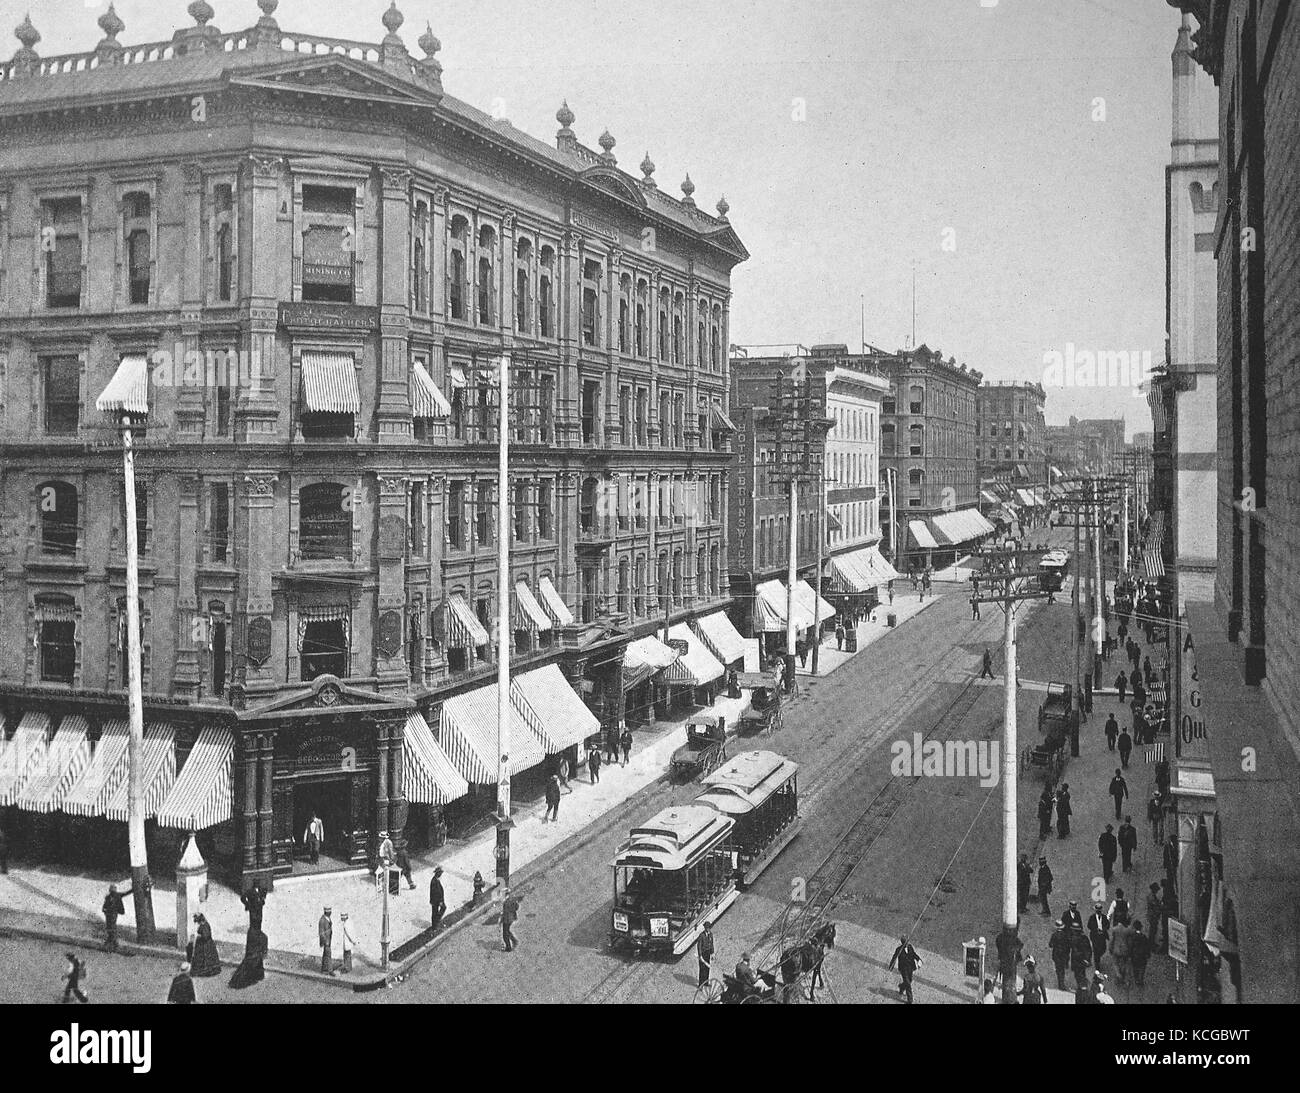 Vereinigte Staaten von Amerika, street scene und Gebäude in Larimer Straße in der Stadt Denver im Bundesstaat Colorado, digital verbesserte Reproduktion einer historischen Foto aus dem (geschätzten) Jahr 1899 Stockfoto